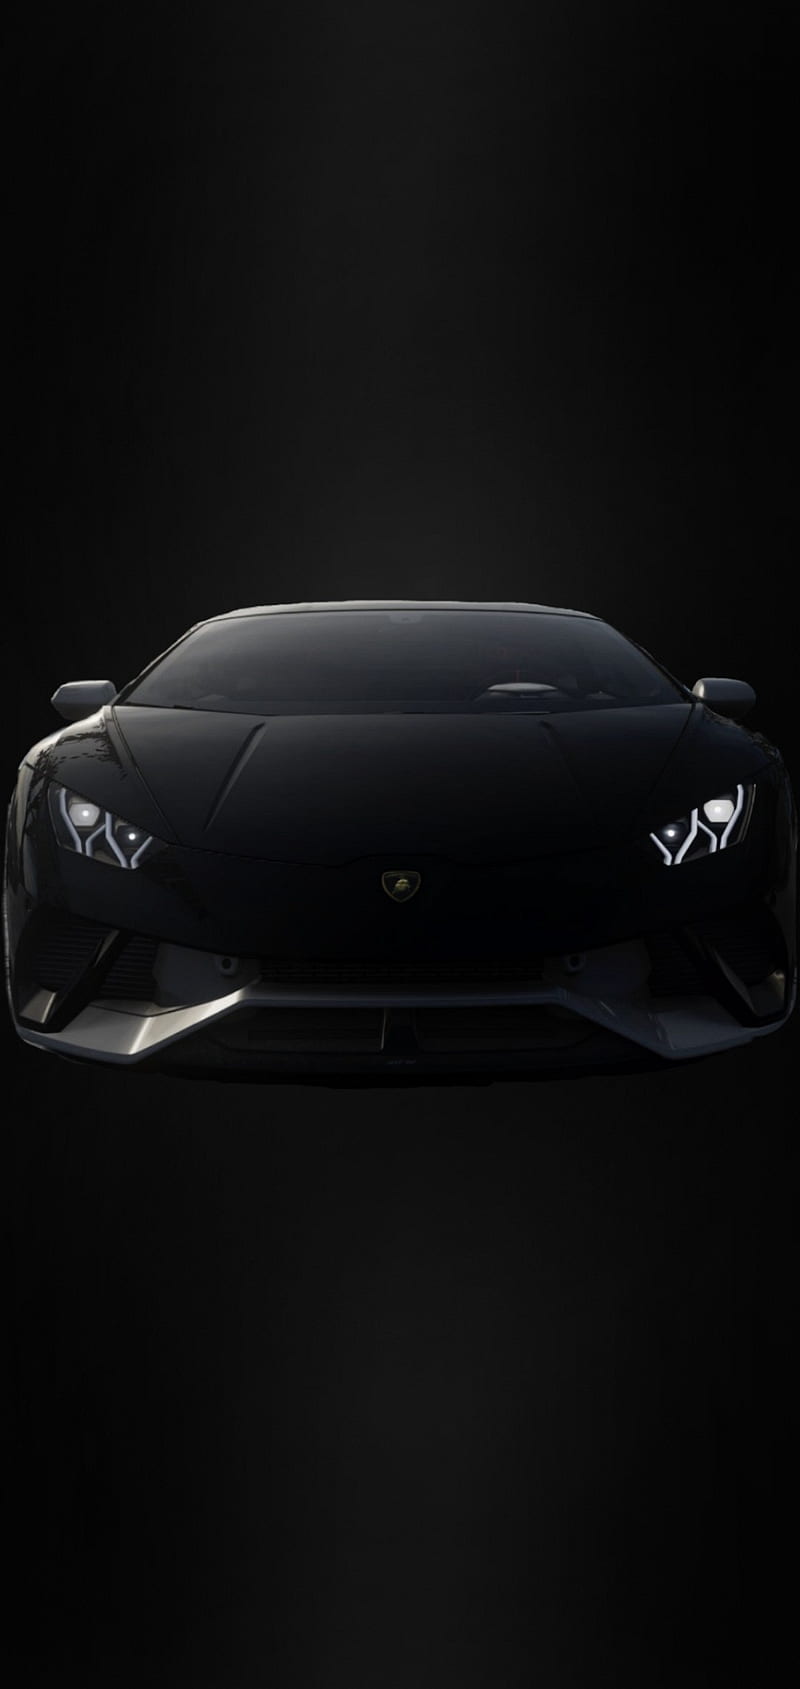 Hình nền logo Lamborghini chất lượng cao: Tận hưởng vẻ đẹp tuyệt vời của siêu xe Lamborghini mà bạn luôn mơ ước với hình nền logo Lamborghini chất lượng cao. Với độ sắc nét và chân thực của hình ảnh, bạn có thể ngắm nhìn những chiếc siêu xe này mọi lúc mọi nơi.